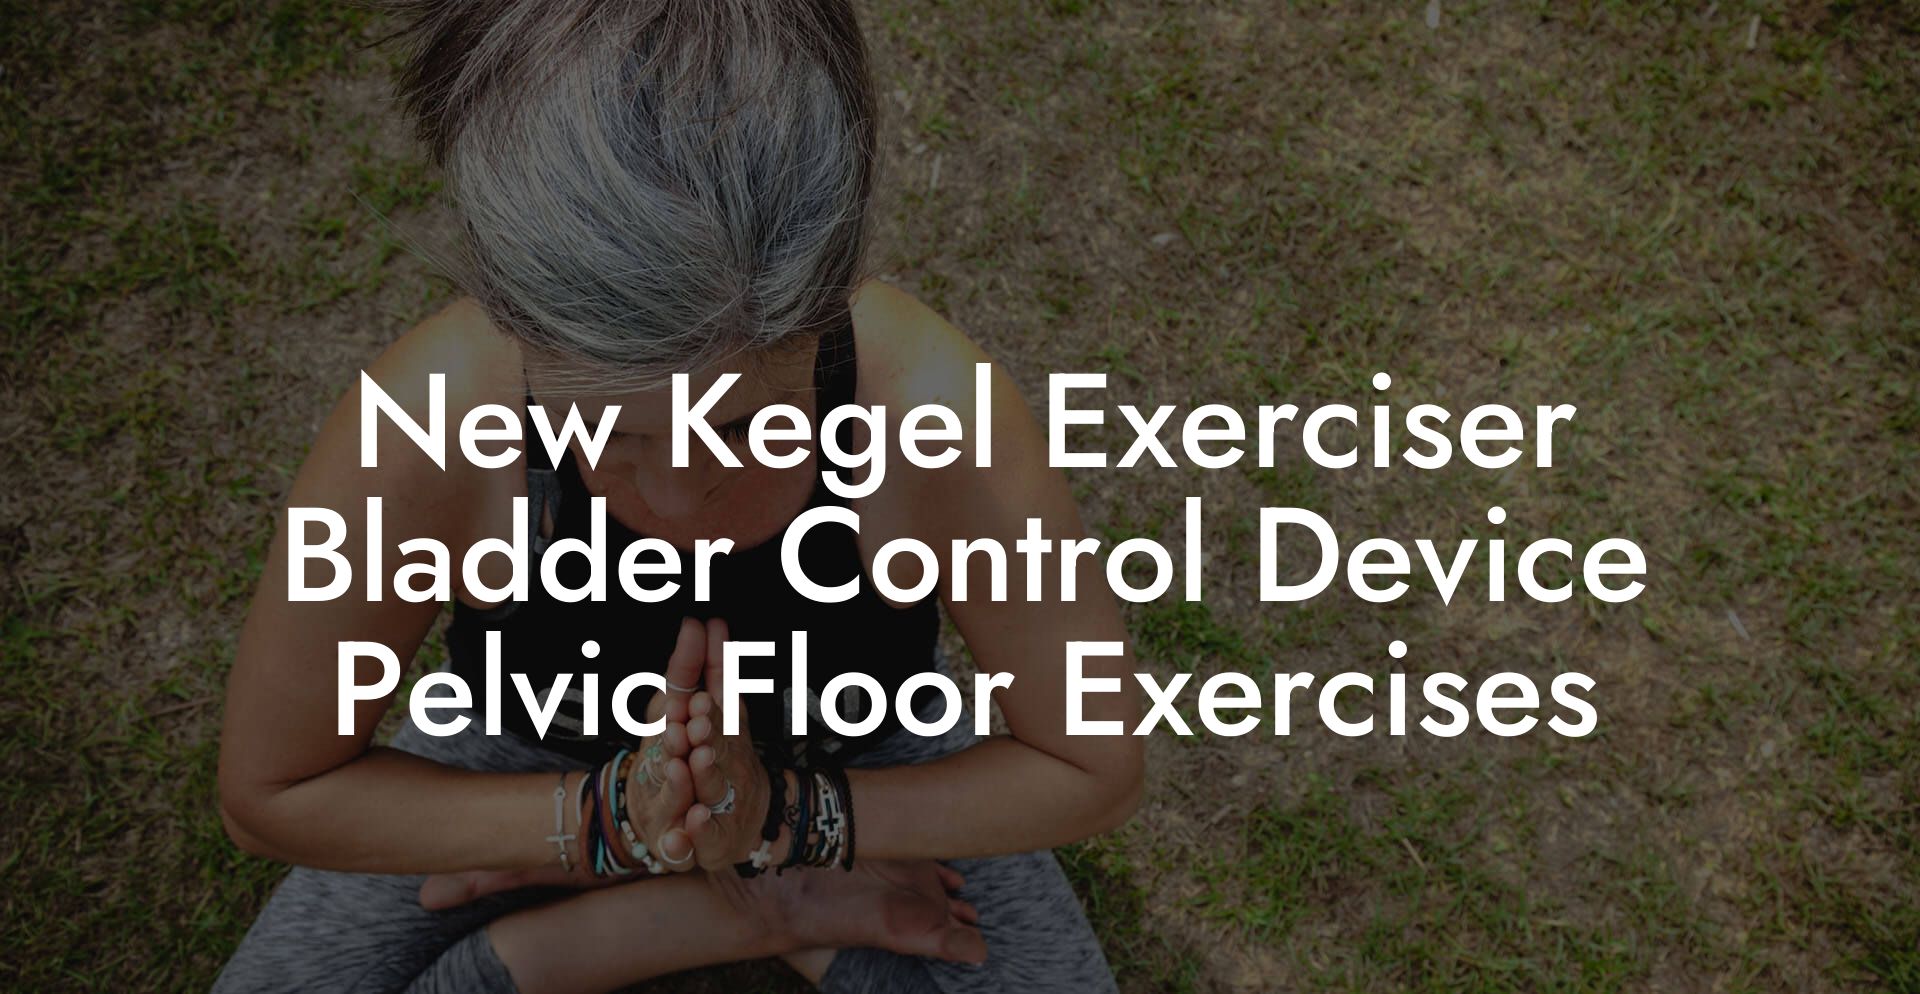 New Kegel Exerciser Bladder Control Device Pelvic Floor Exercises